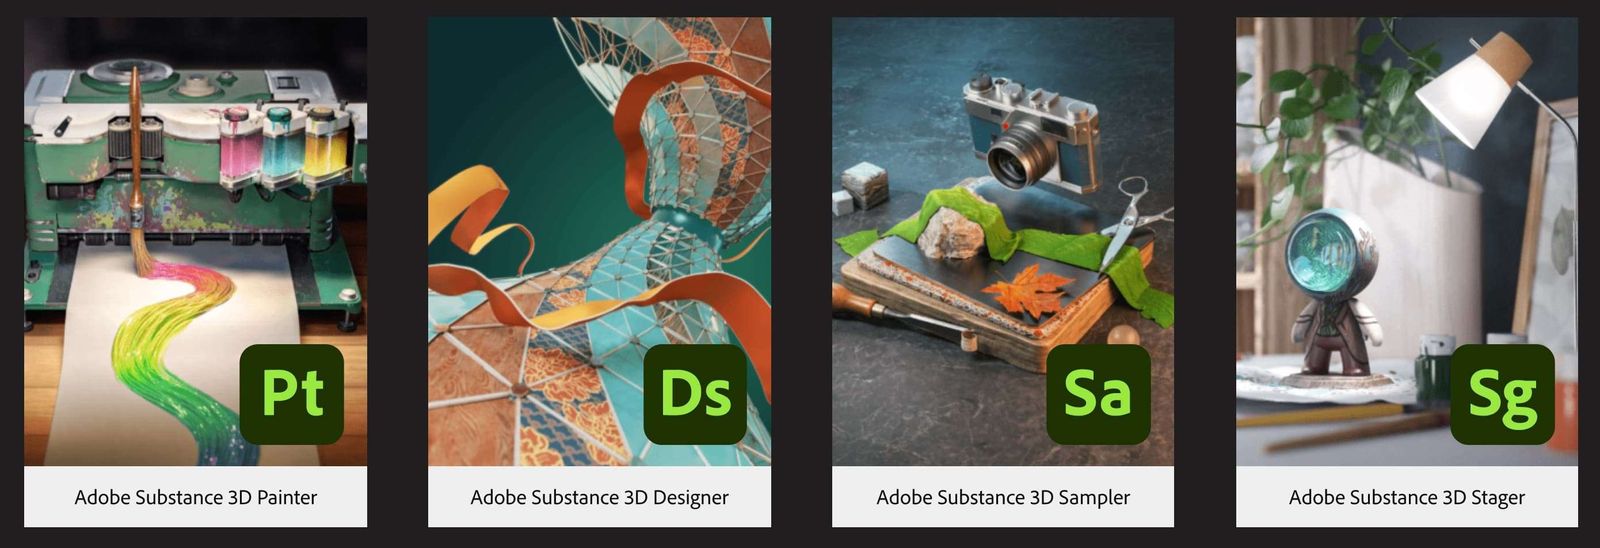 substance 3d designer adobe